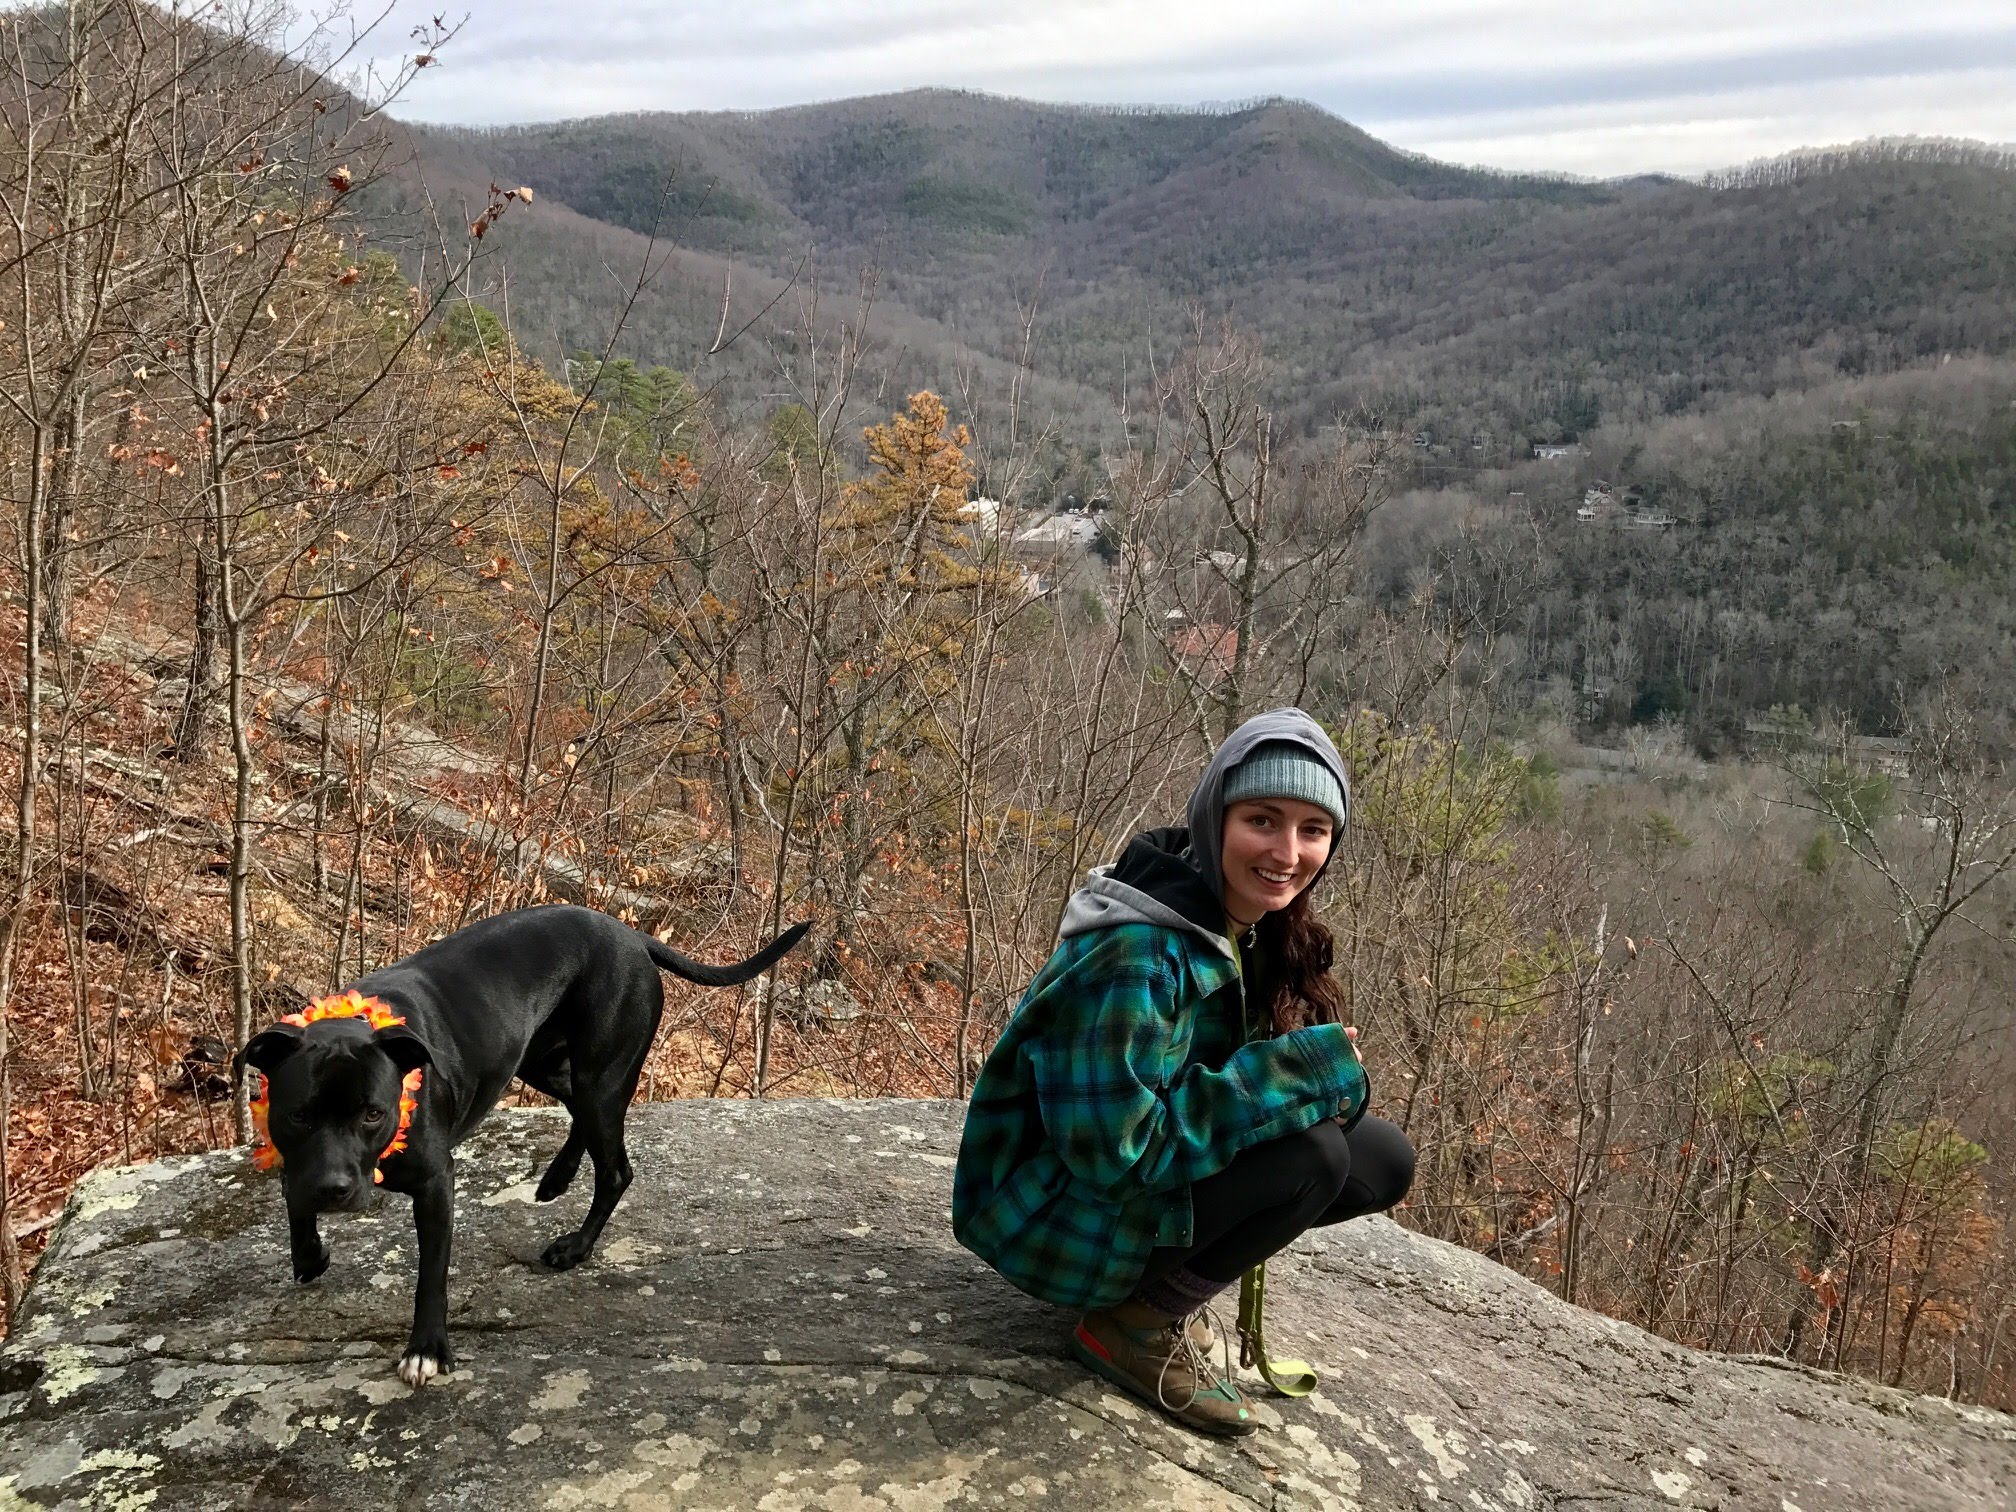 Katy and Noa - North Carolina Mountains